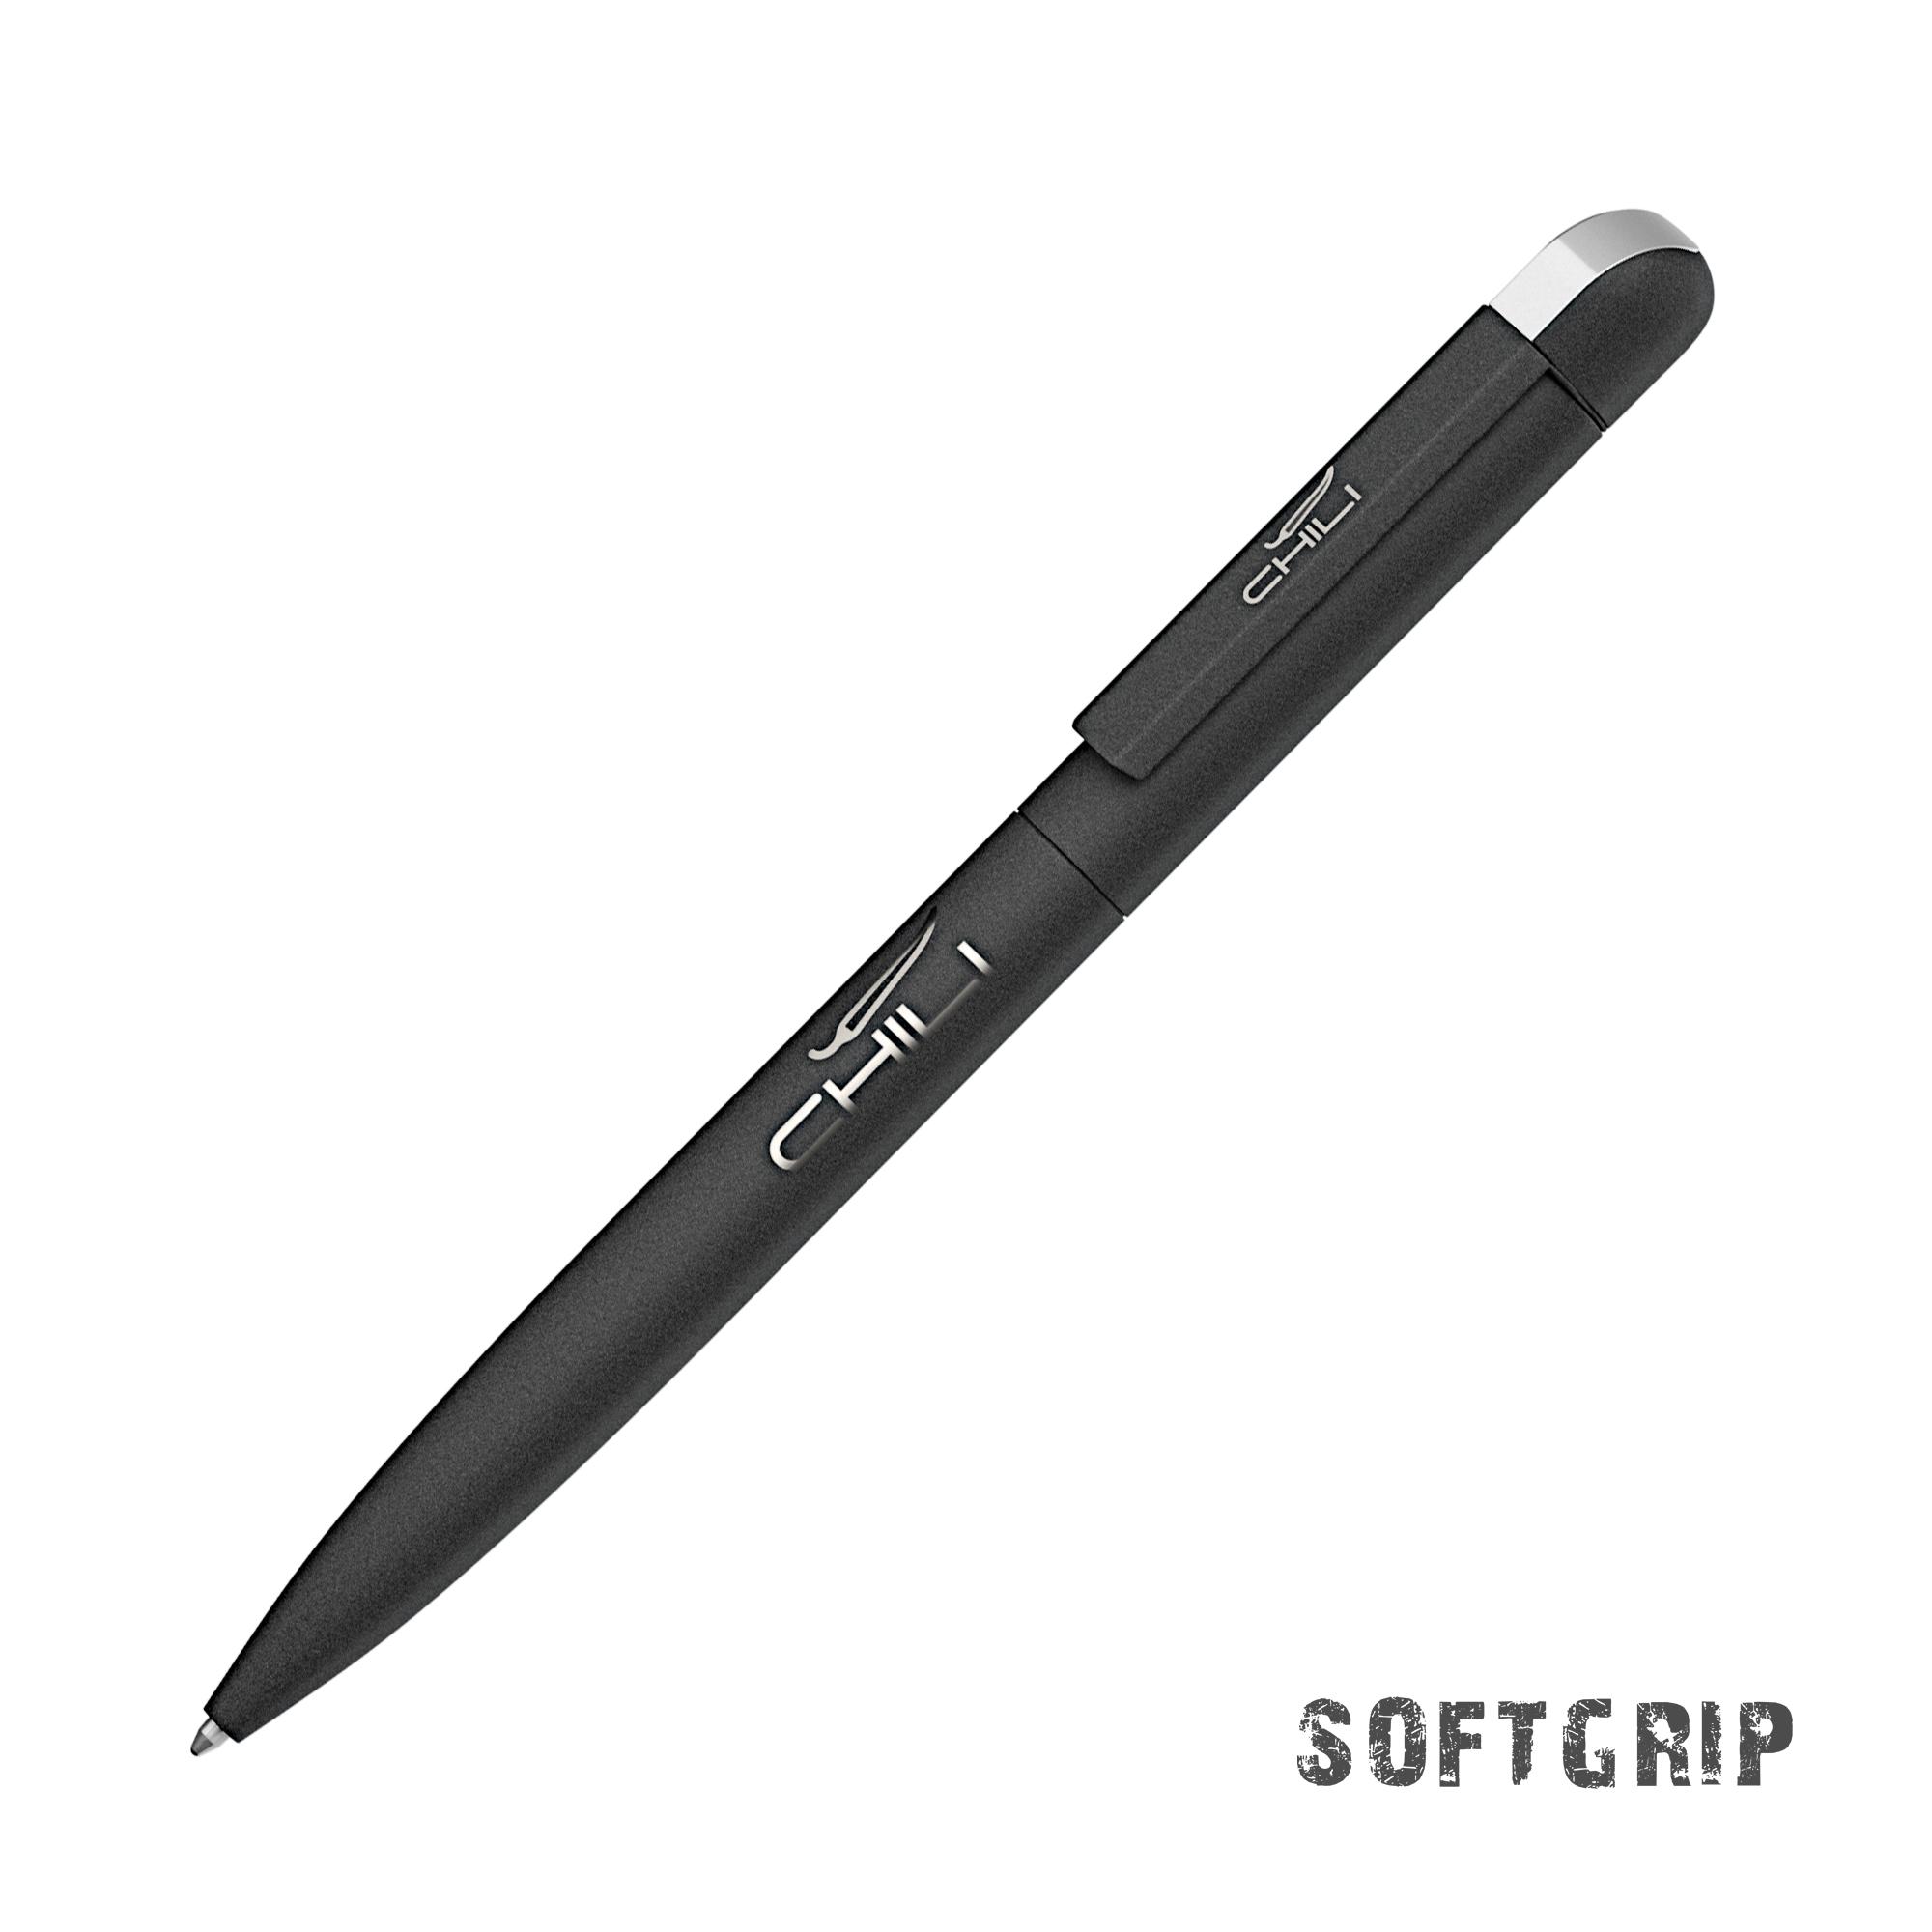 Ручка шариковая "Jupiter SOFTGRIP", покрытие softgrip, цвет черный